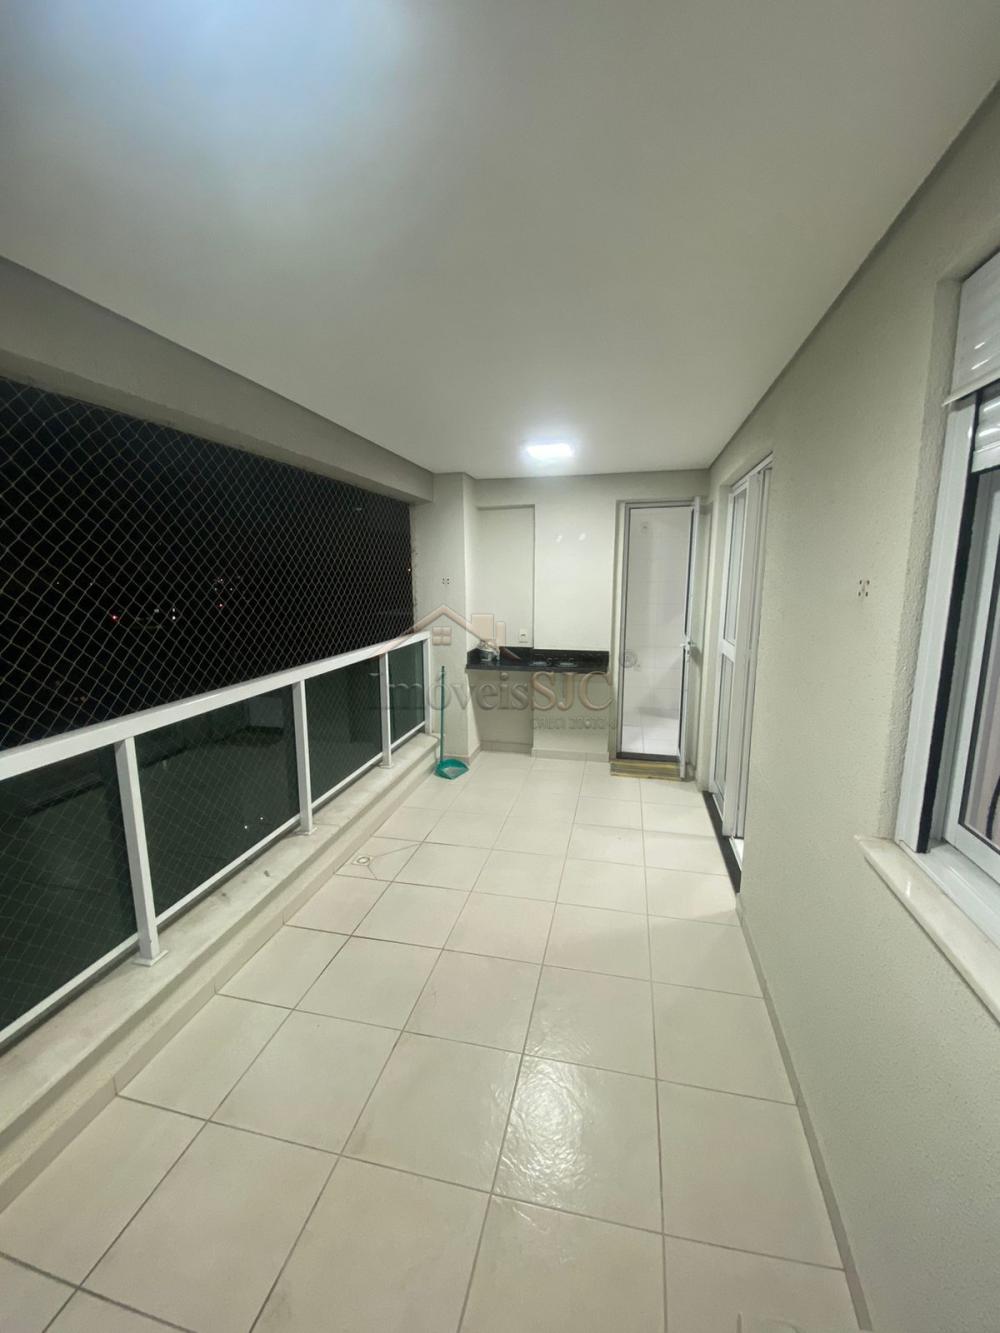 Alugar Apartamentos / Padrão em São José dos Campos R$ 3.200,00 - Foto 4